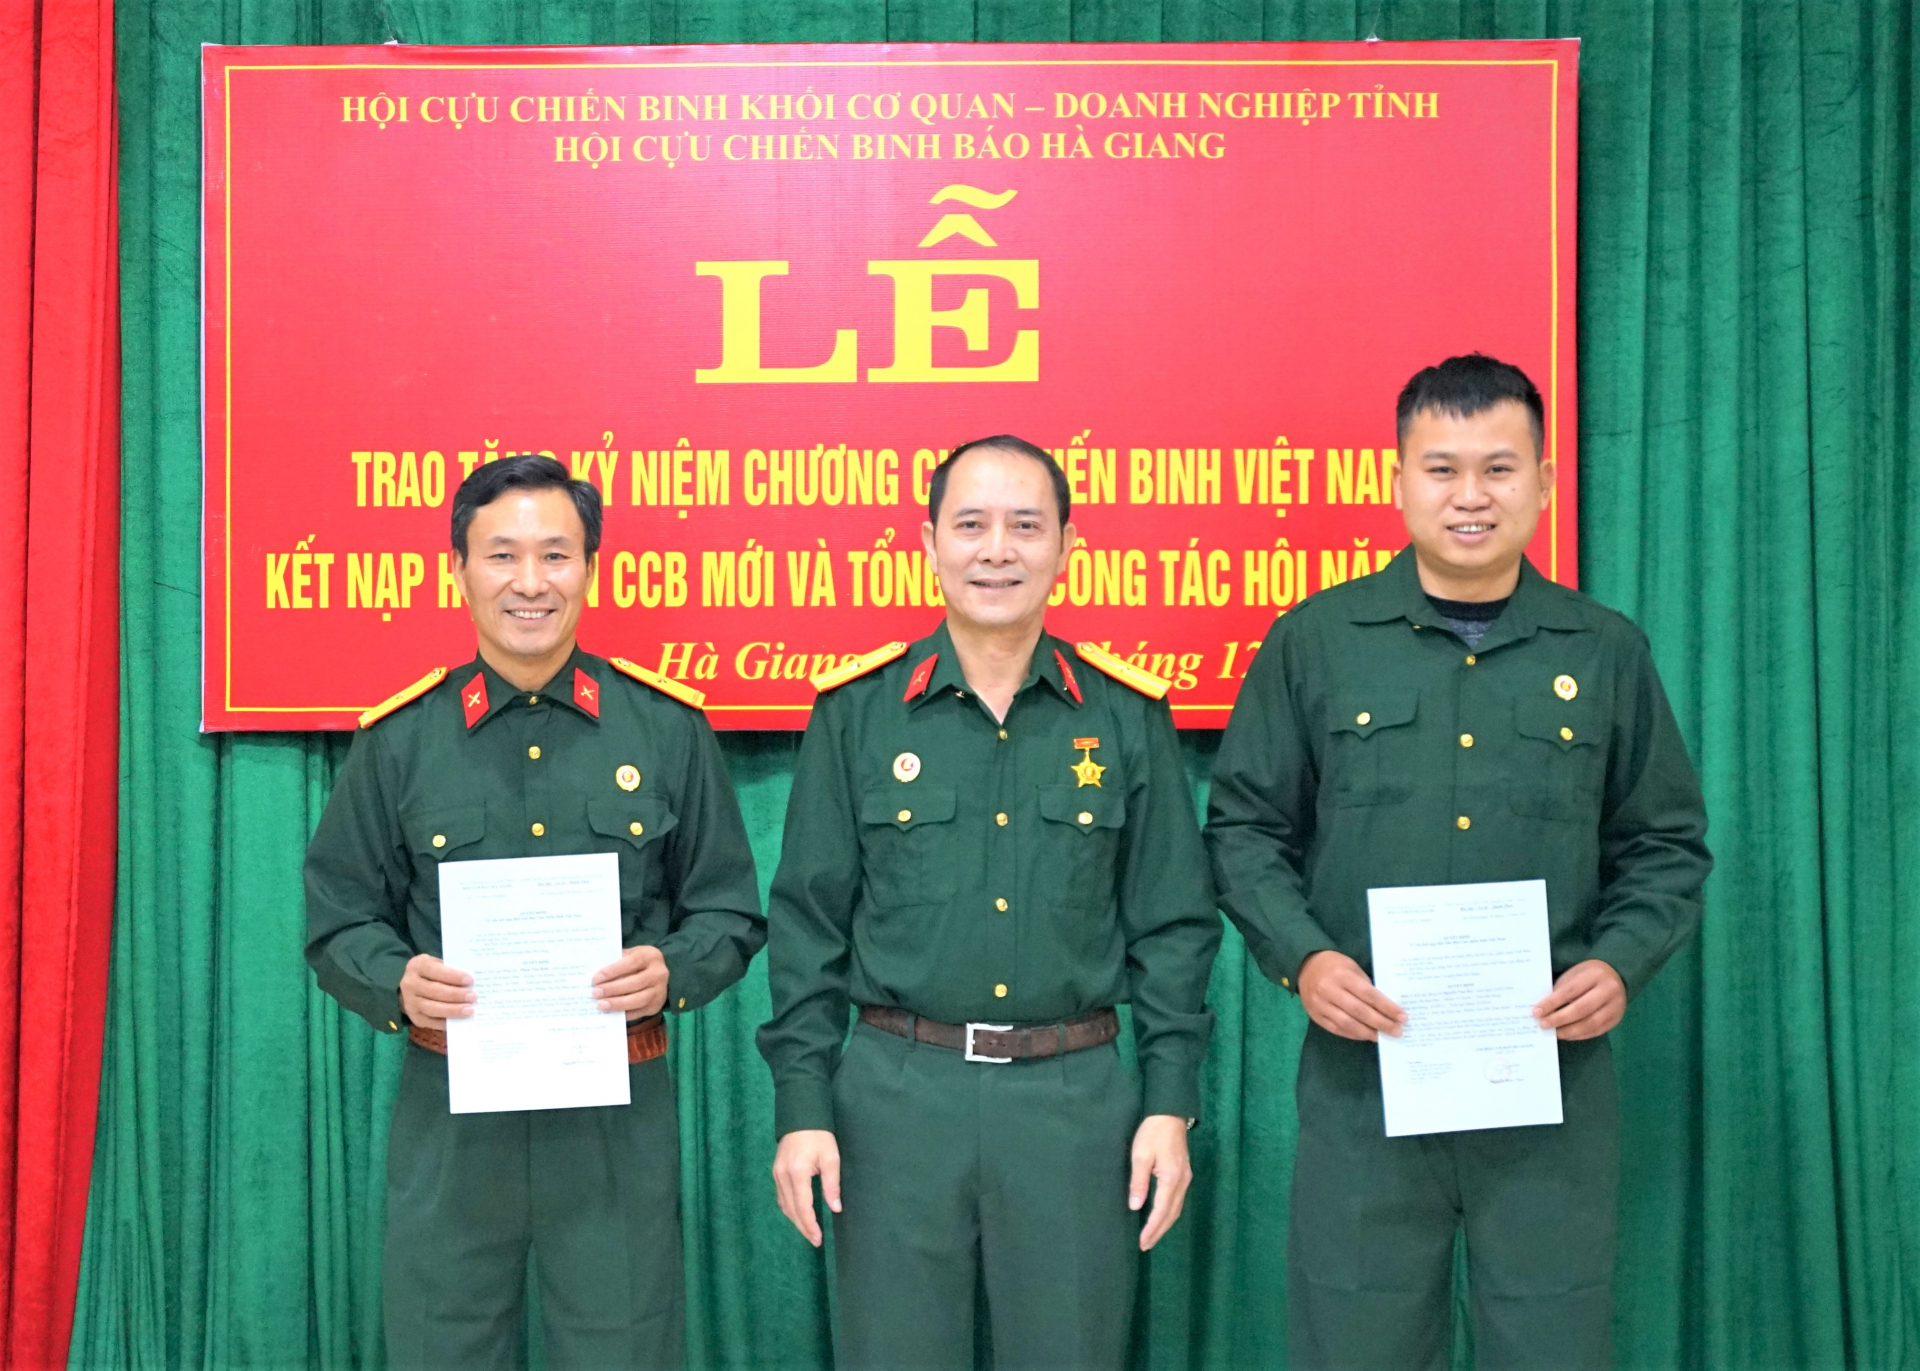 Đồng chí Nguyễn Hữu Thụy, Chủ tịch Hội CCB Báo Hà Giang trao quyết định cho 2 hội viên mới.